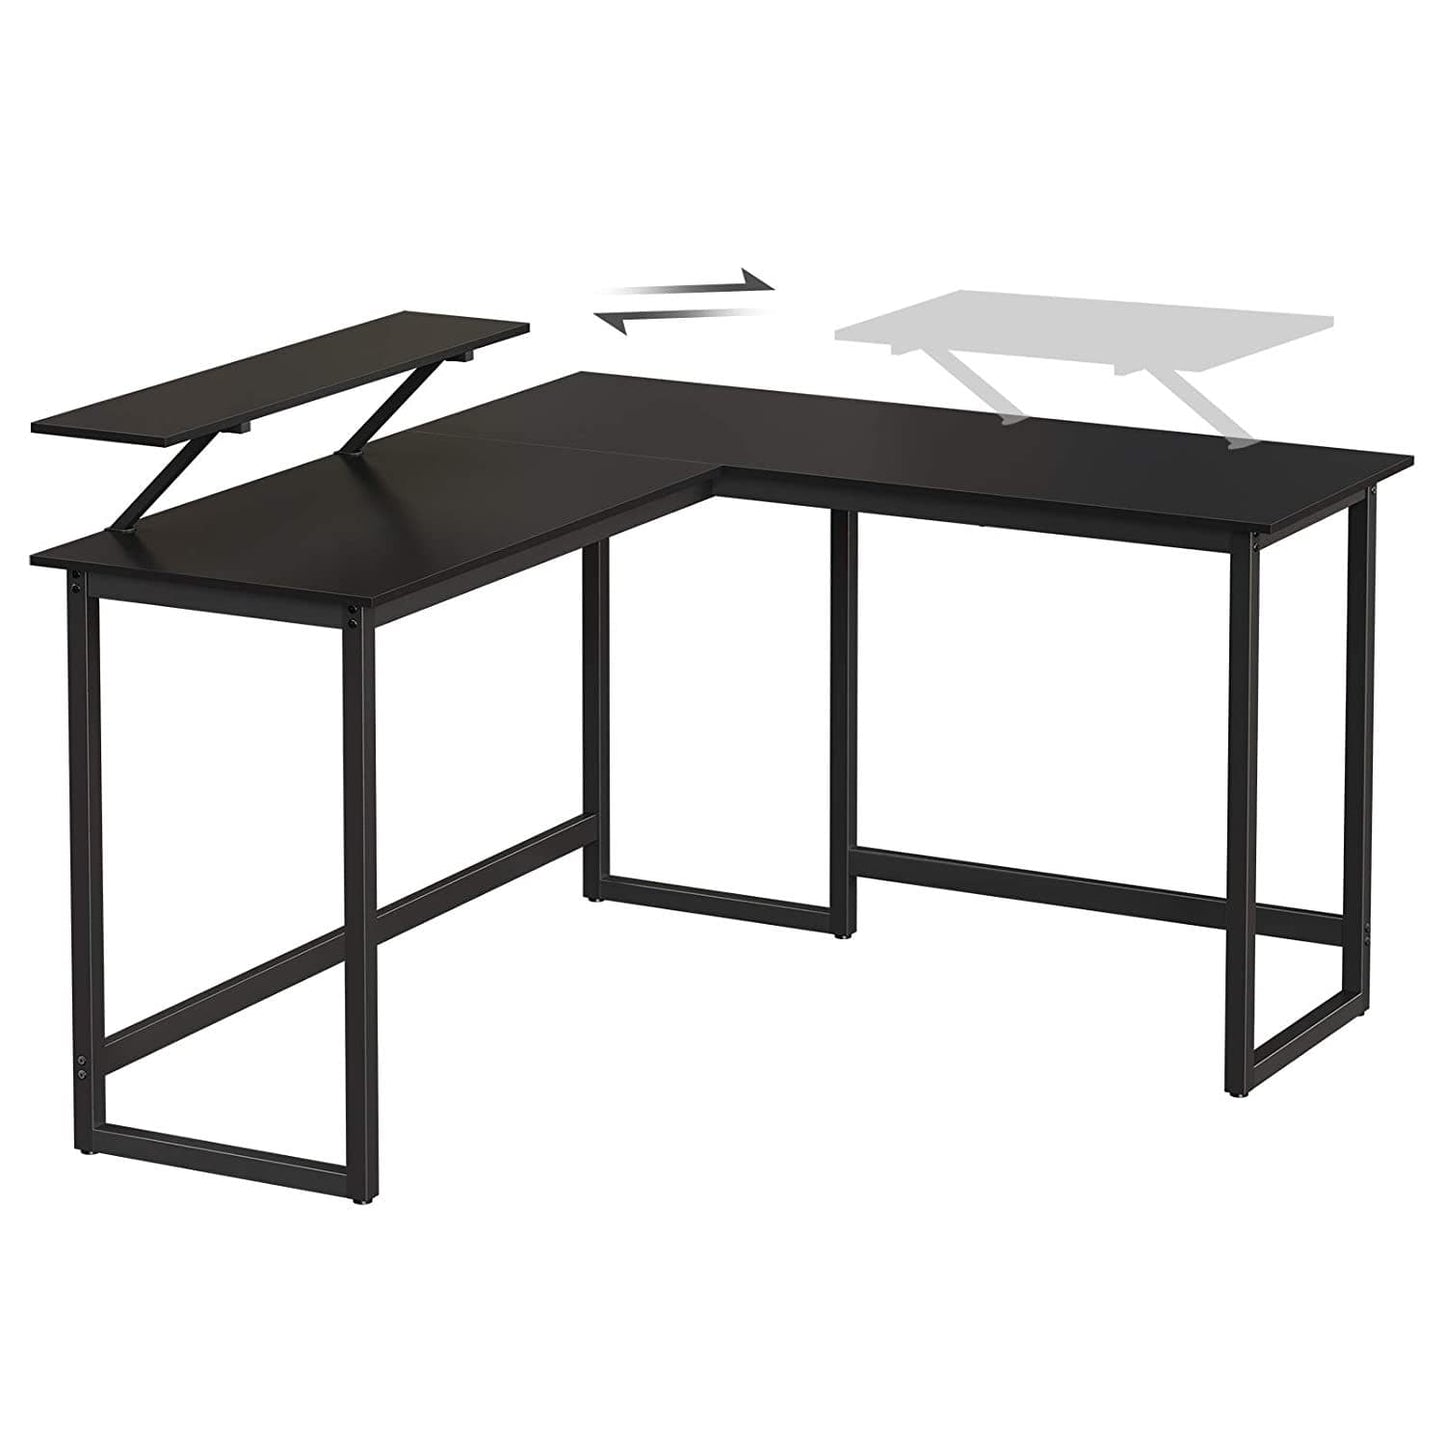 Nancy's Henderson Desk - Bureaux - Bureau d'angle - En forme de L - Industriel - Bois et métal - Noir - 140 x 130 x 76 cm